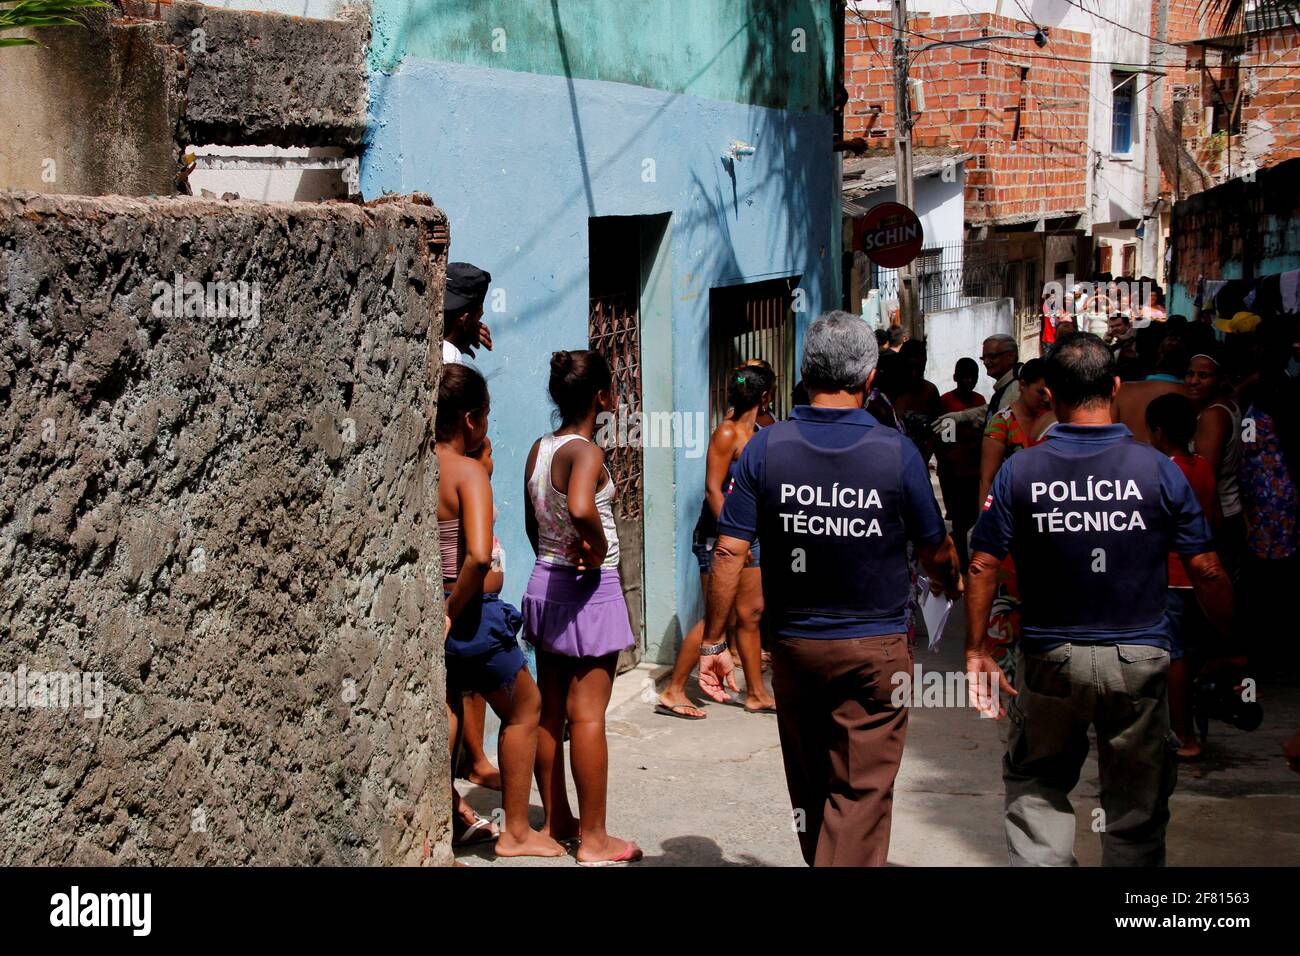 salvador, bahia / brasile - 23 gennaio 2013: Scena del crimine in cui il giovane è assassinato con 20 colpi, nel quartiere di Polemica nella città di Salvad Foto Stock